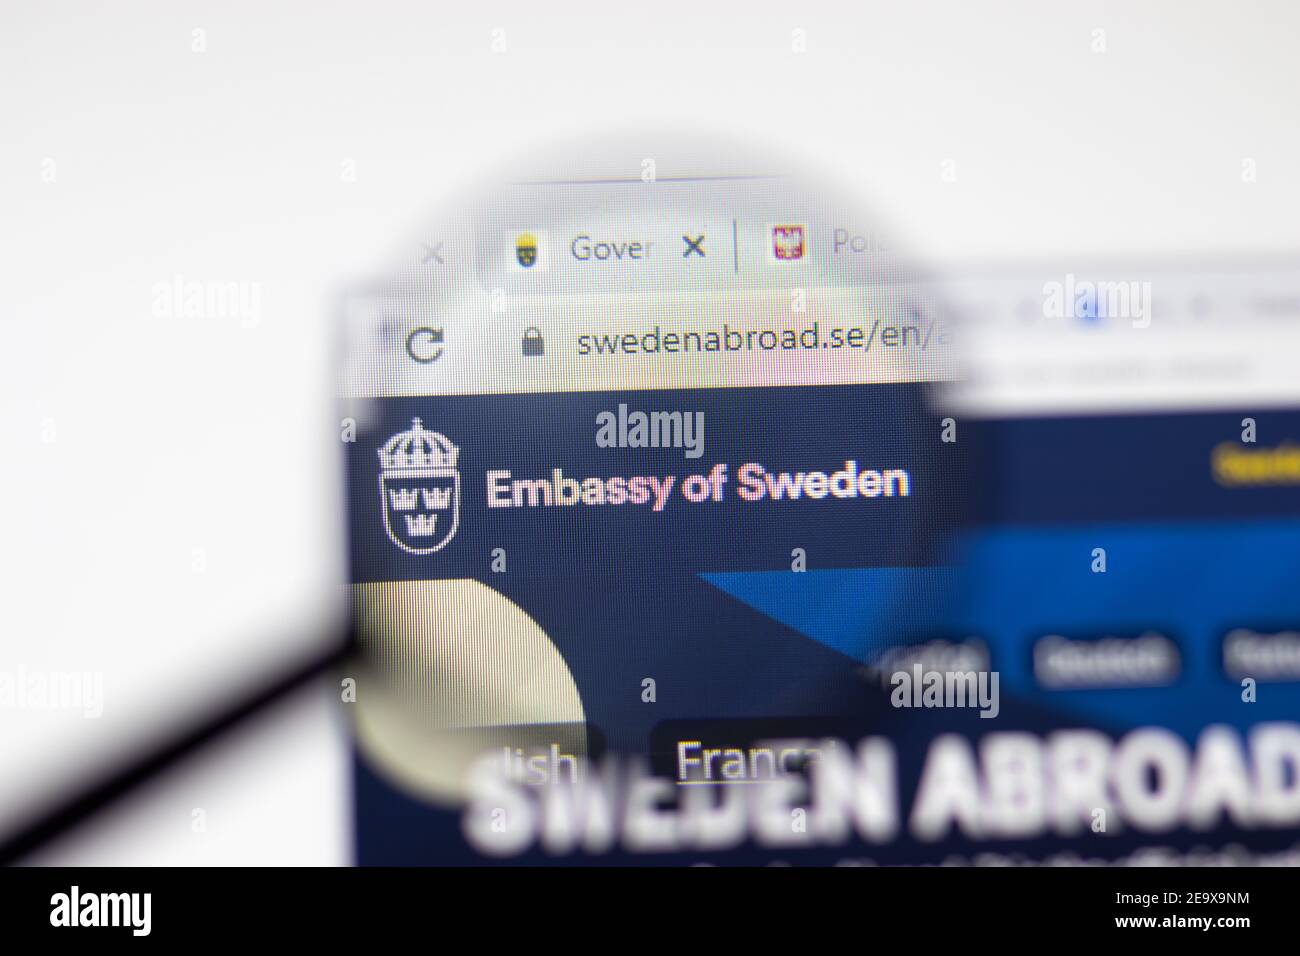 Los Angeles, USA - 1. Februar 2021: Website der Botschaft von Schweden. Swedenabroad.se Logo auf dem Display, illustrative Editorial Stockfoto